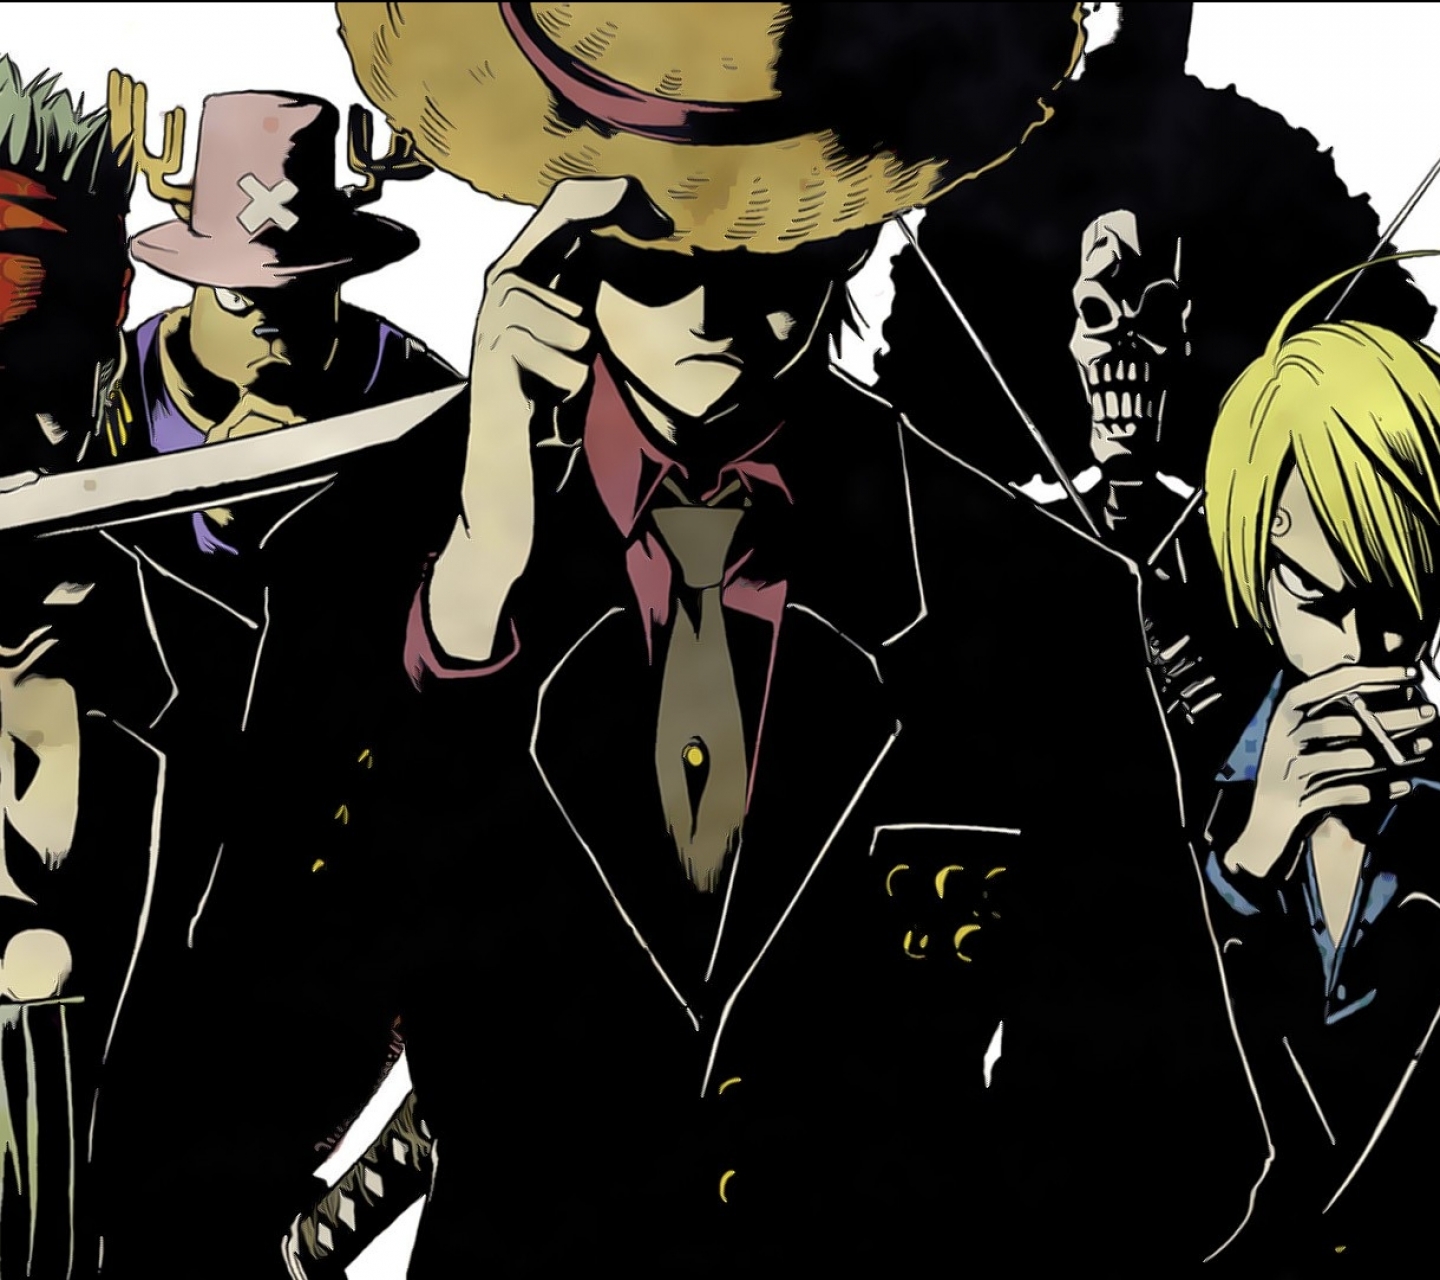 Download mobile wallpaper Anime, One Piece, Tony Tony Chopper, Usopp (One Piece), Roronoa Zoro, Monkey D Luffy, Sanji (One Piece), Brook (One Piece), Franky (One Piece) for free.